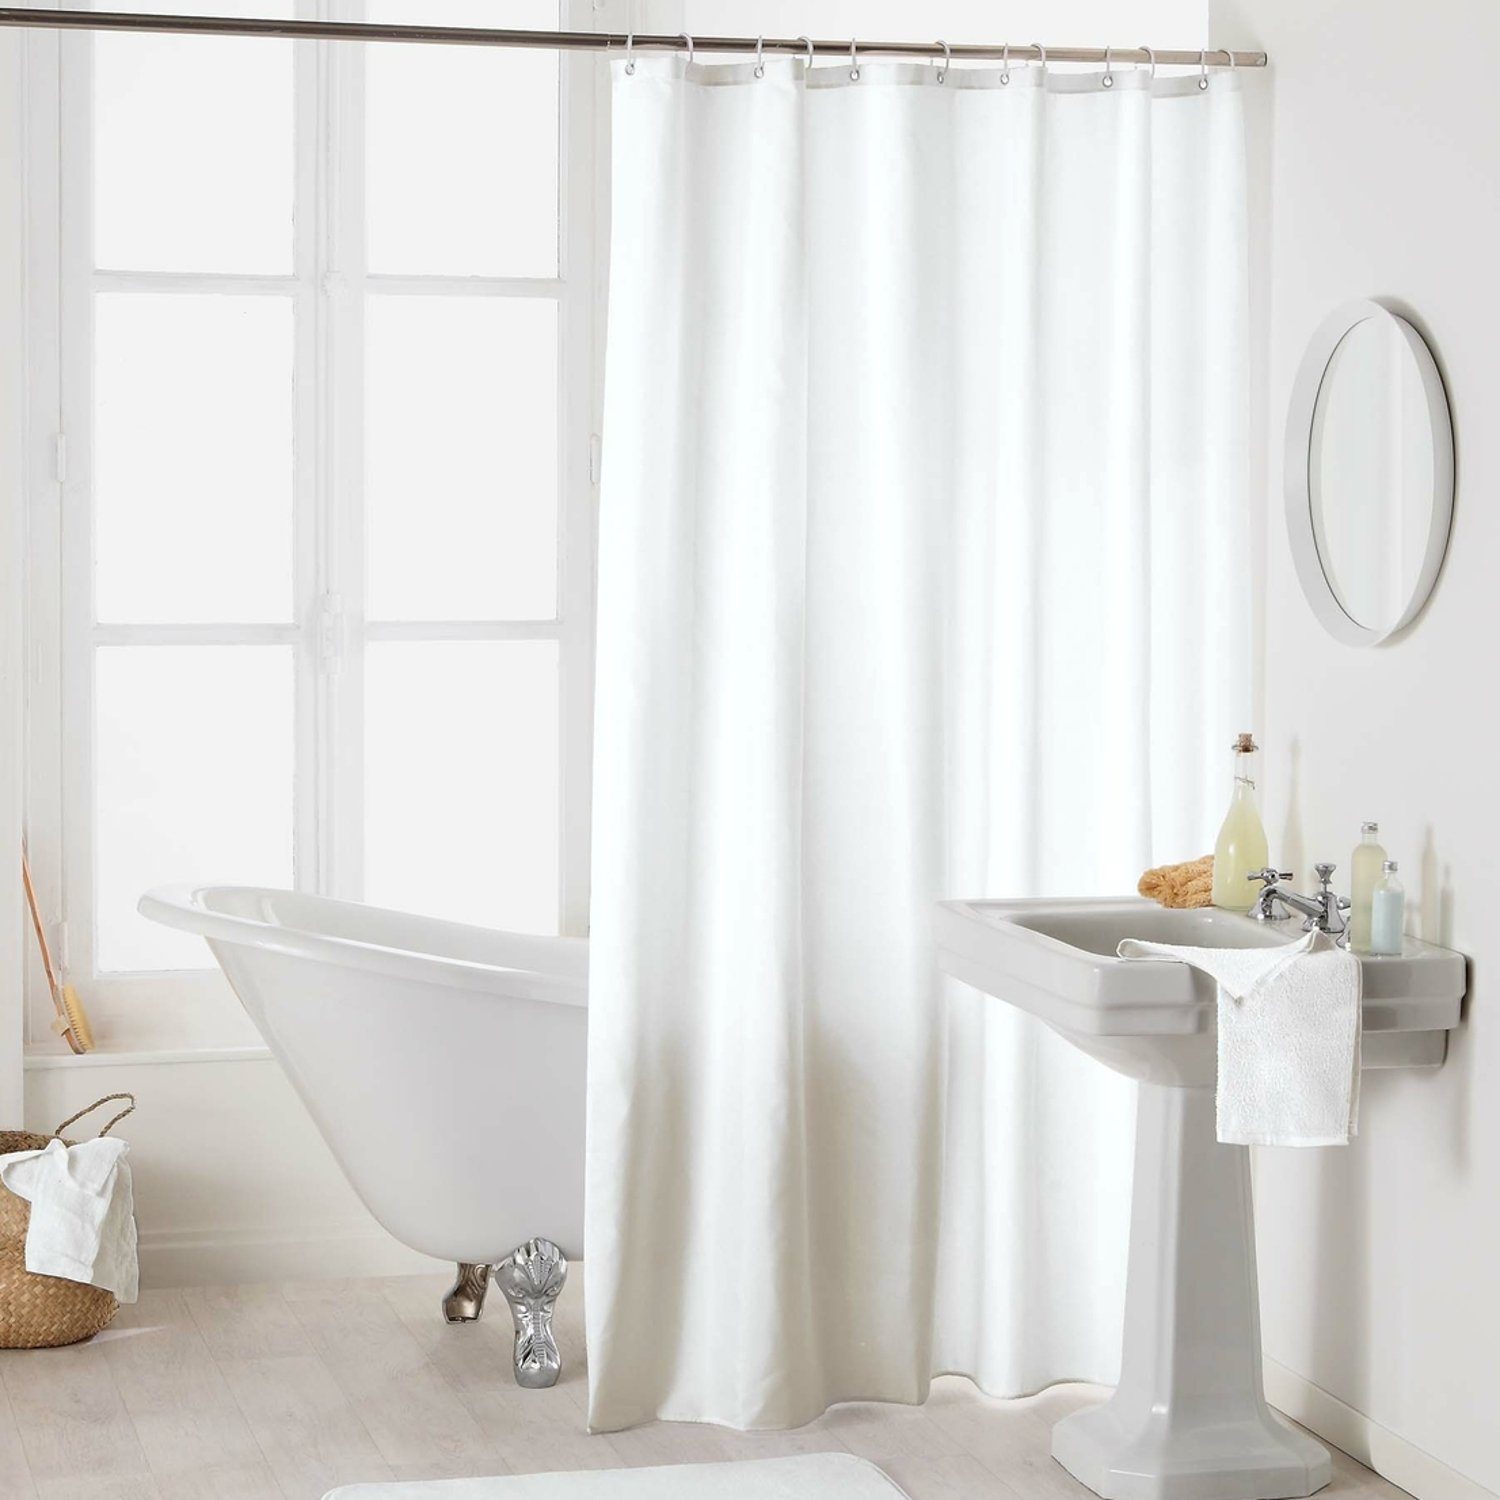 Sanixa Duschvorhang waschbar Badewannenvorhang Vorhang hochwertige Qualität  Metallösen Breite 180 cm, Duschvorhang Textil 180x200 cm Uni Weiß einfarbig  wasserabweisend